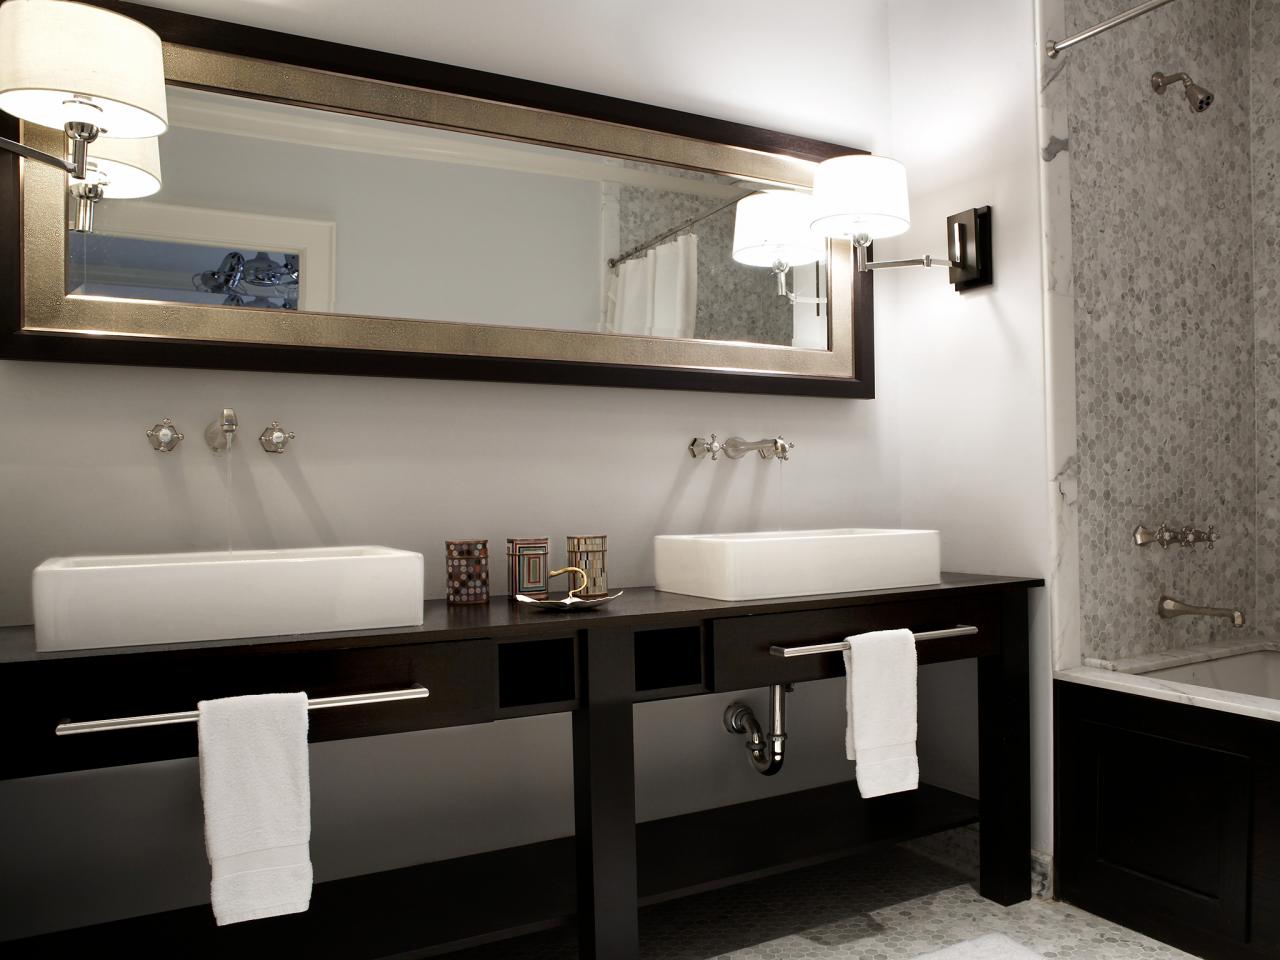 Double Vanities For Bathrooms, Double Vanity Bathroom Cabinets